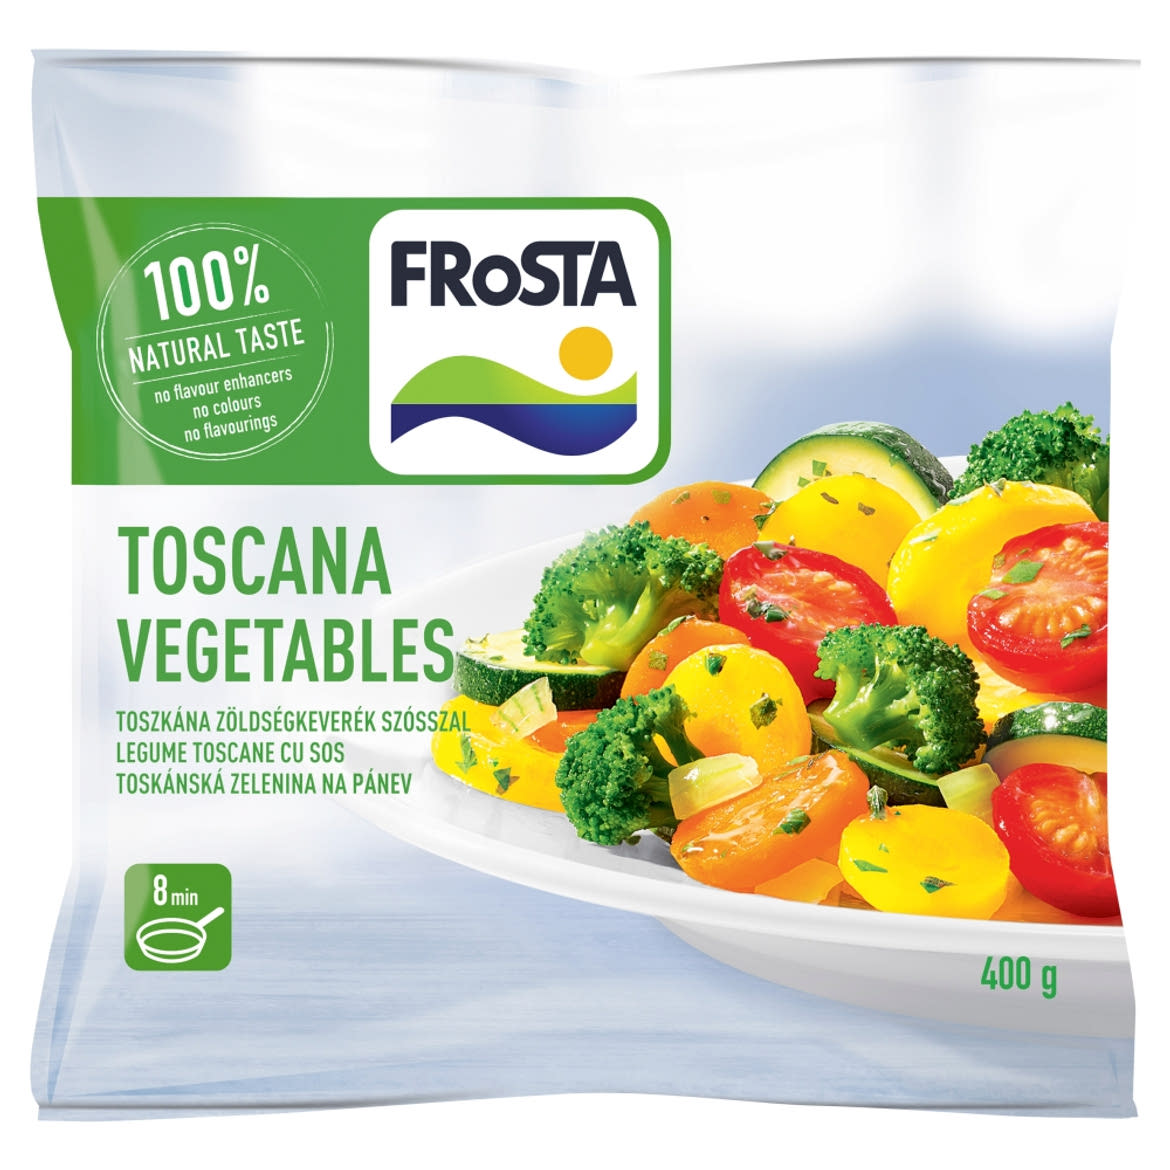 FRoSTA gyorsfagyasztott toszkána zöldségkeverék szósszal